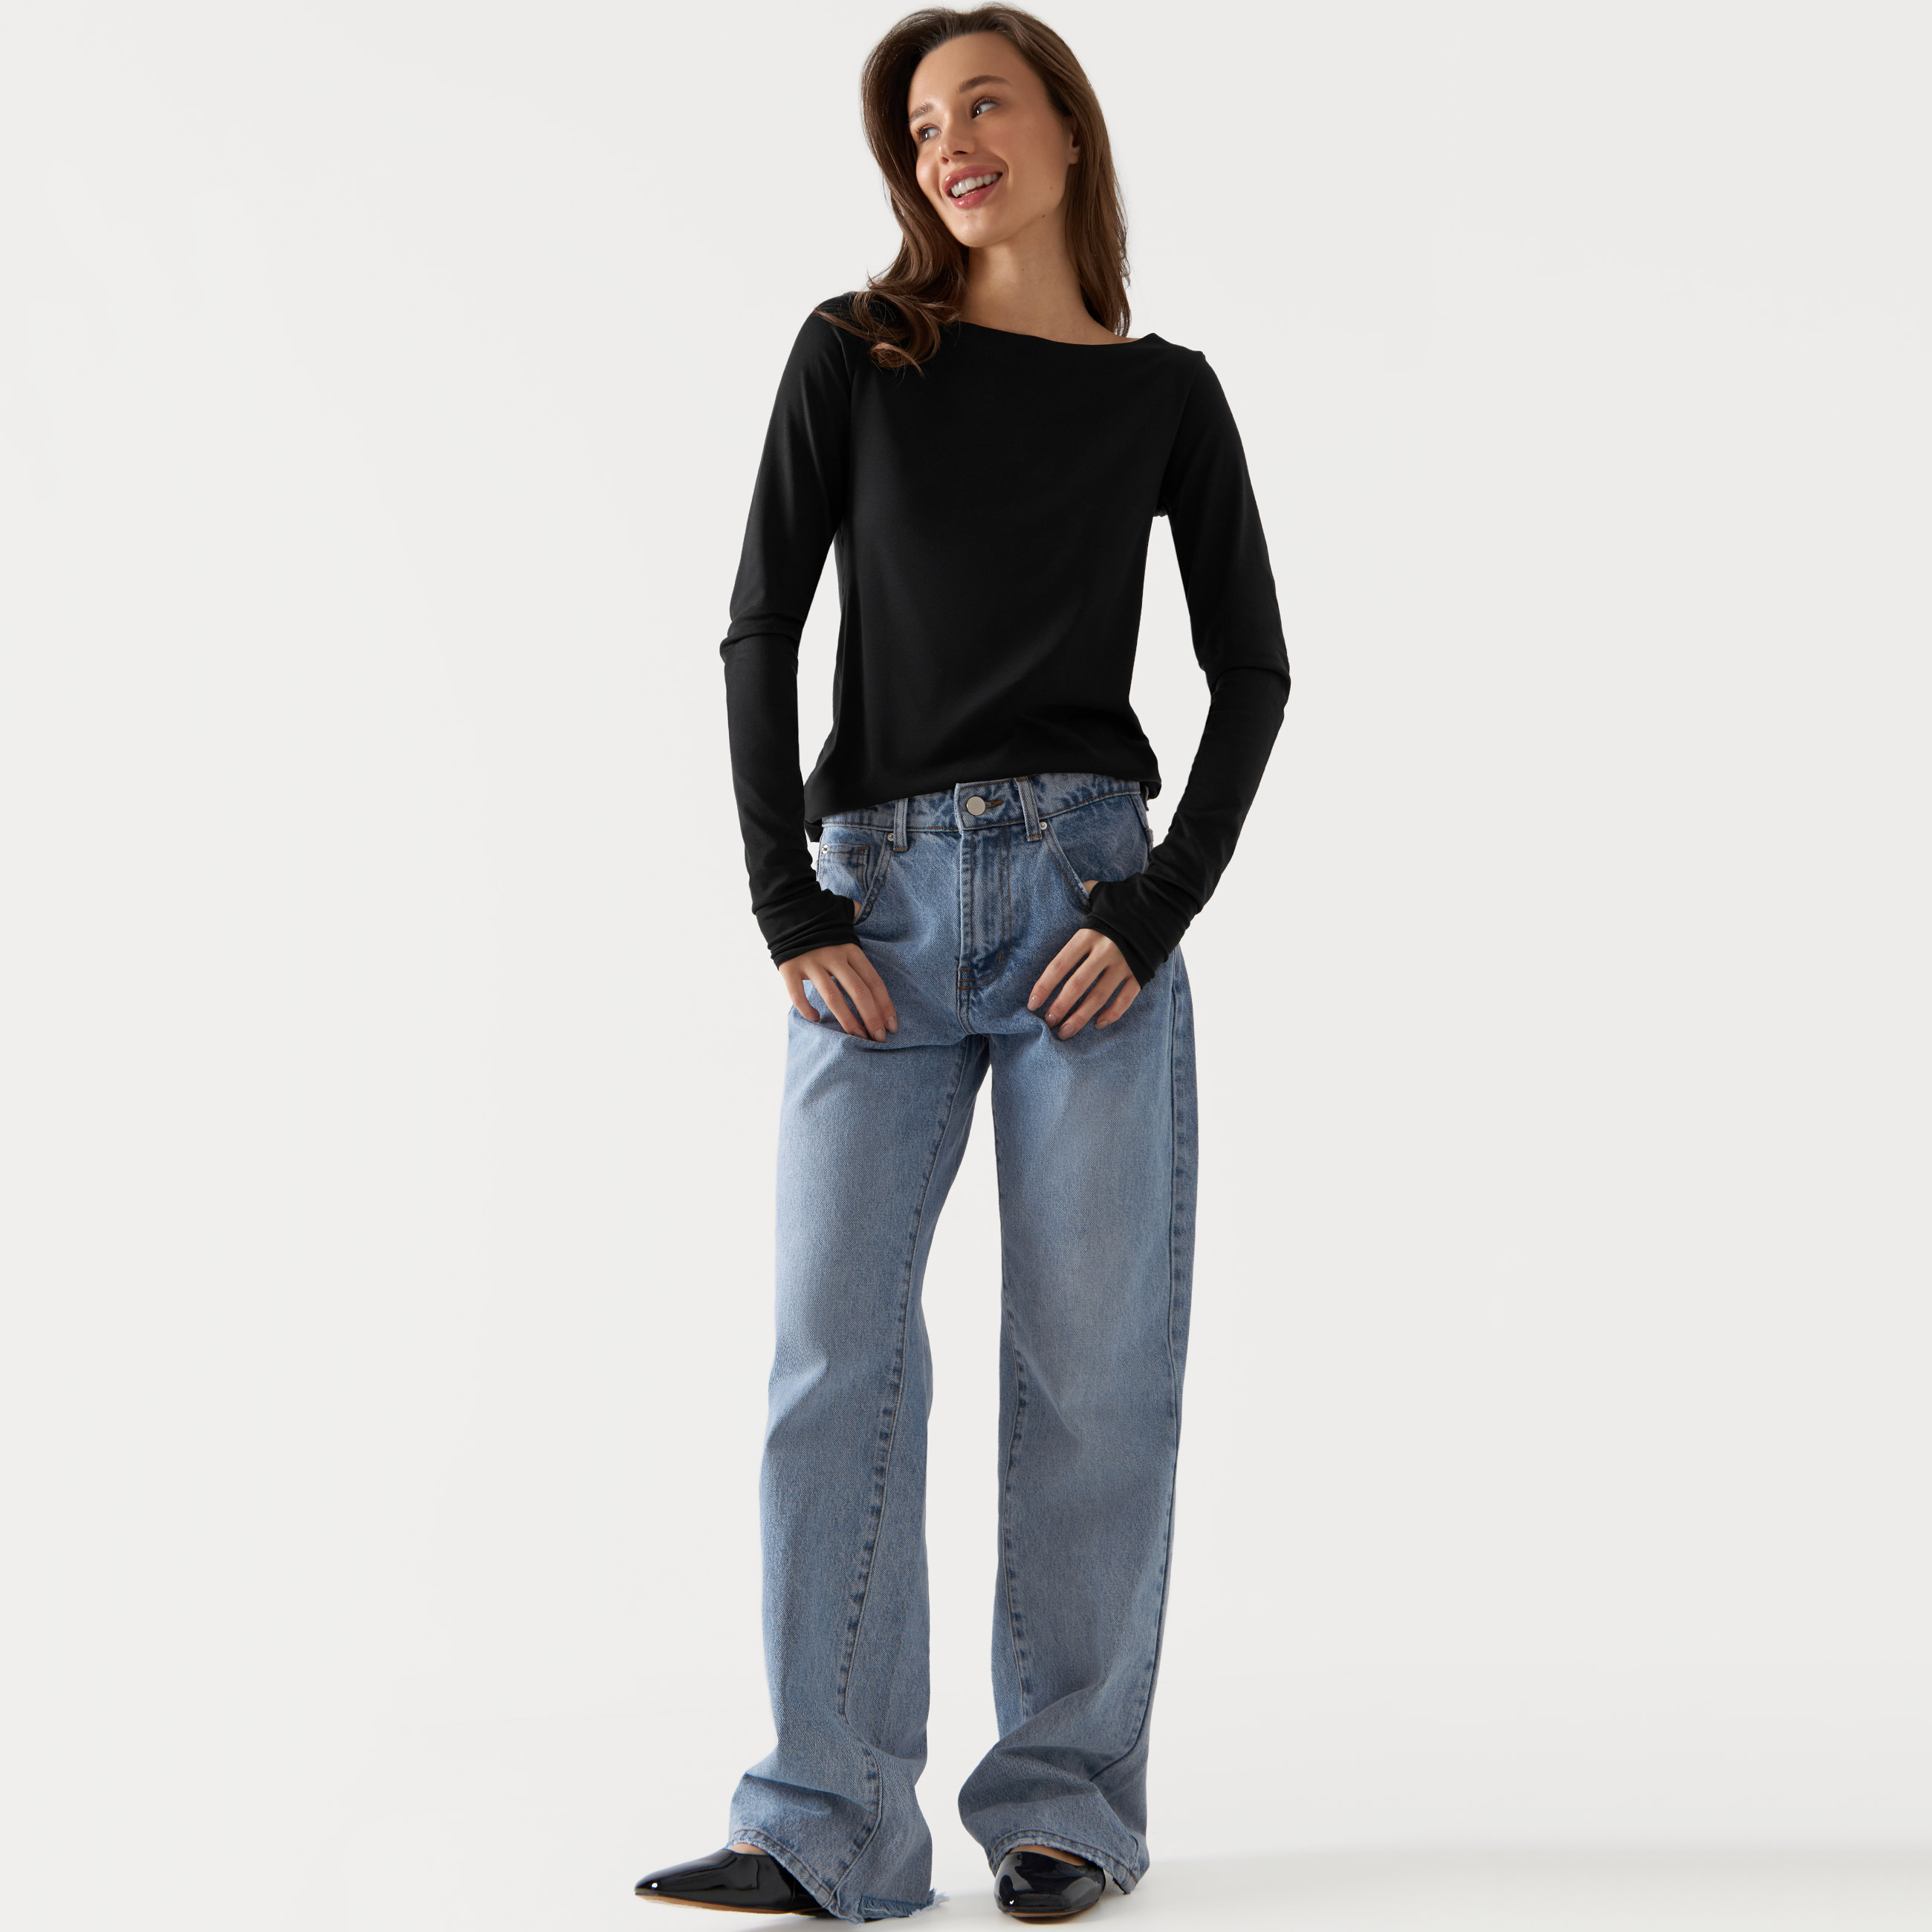 Джинсы женские, широкие, р. L, хлопок, голубые, Milana women jeans high waist pockets button seamless leggings skinny pencil pants jeans 2022 джинсы женские модные